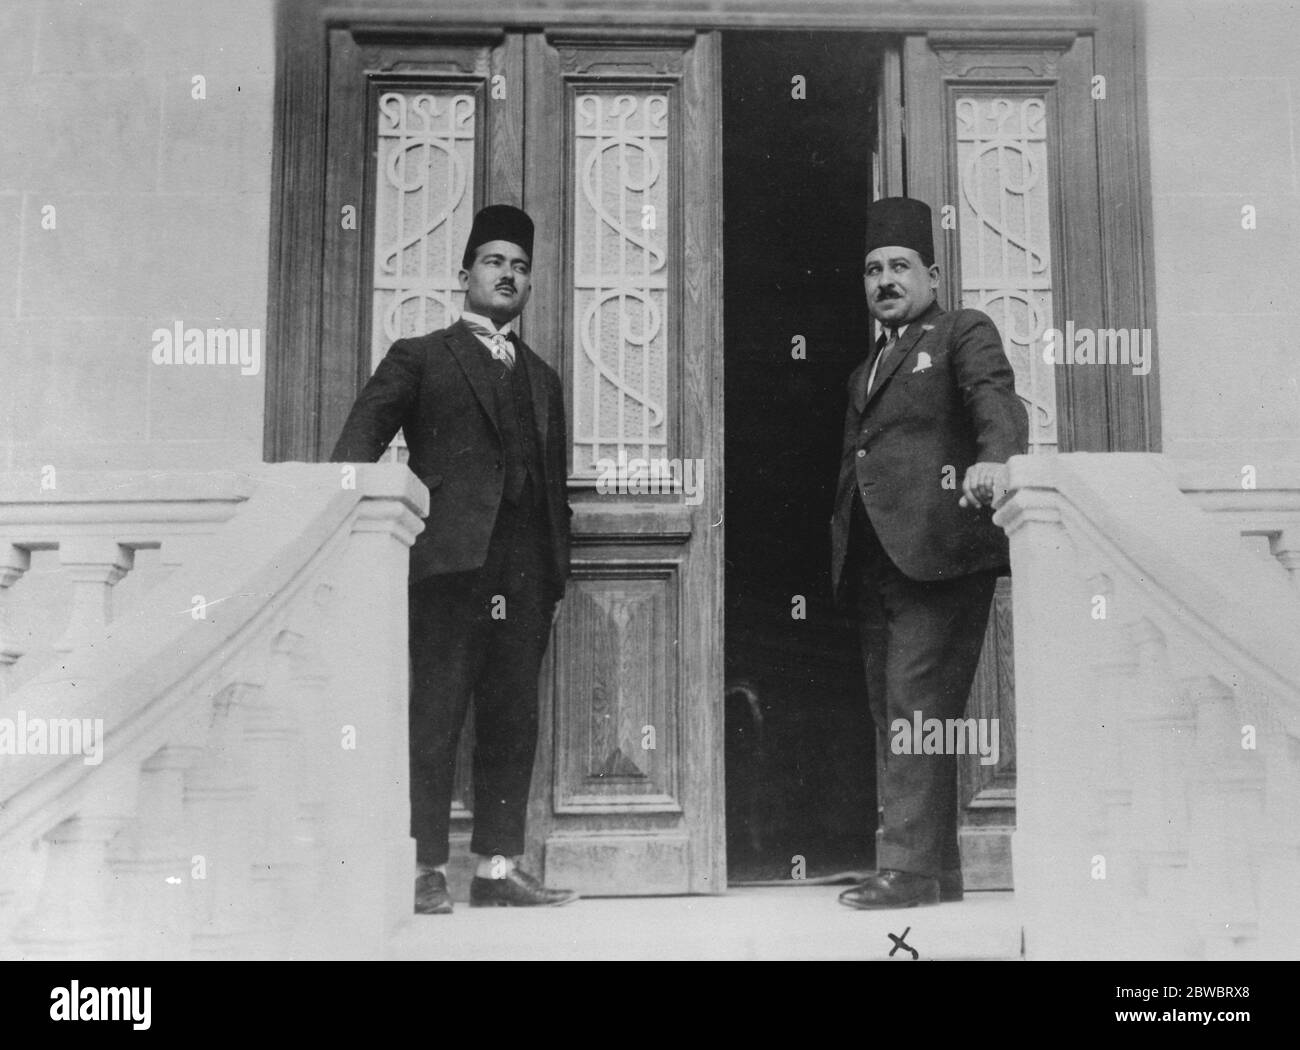 Nota britannica di Vigirous all'Egitto , sentenza del processo di assassinio del Cairo non accettata . Il dottor Admed Maber Bey (X) , accusato, davanti alla sua casa dopo essere stato assolto. Era già Ministro dell' Educazione presso il Ministero di Zaghlul Pasha . 3 giugno 1926 Foto Stock